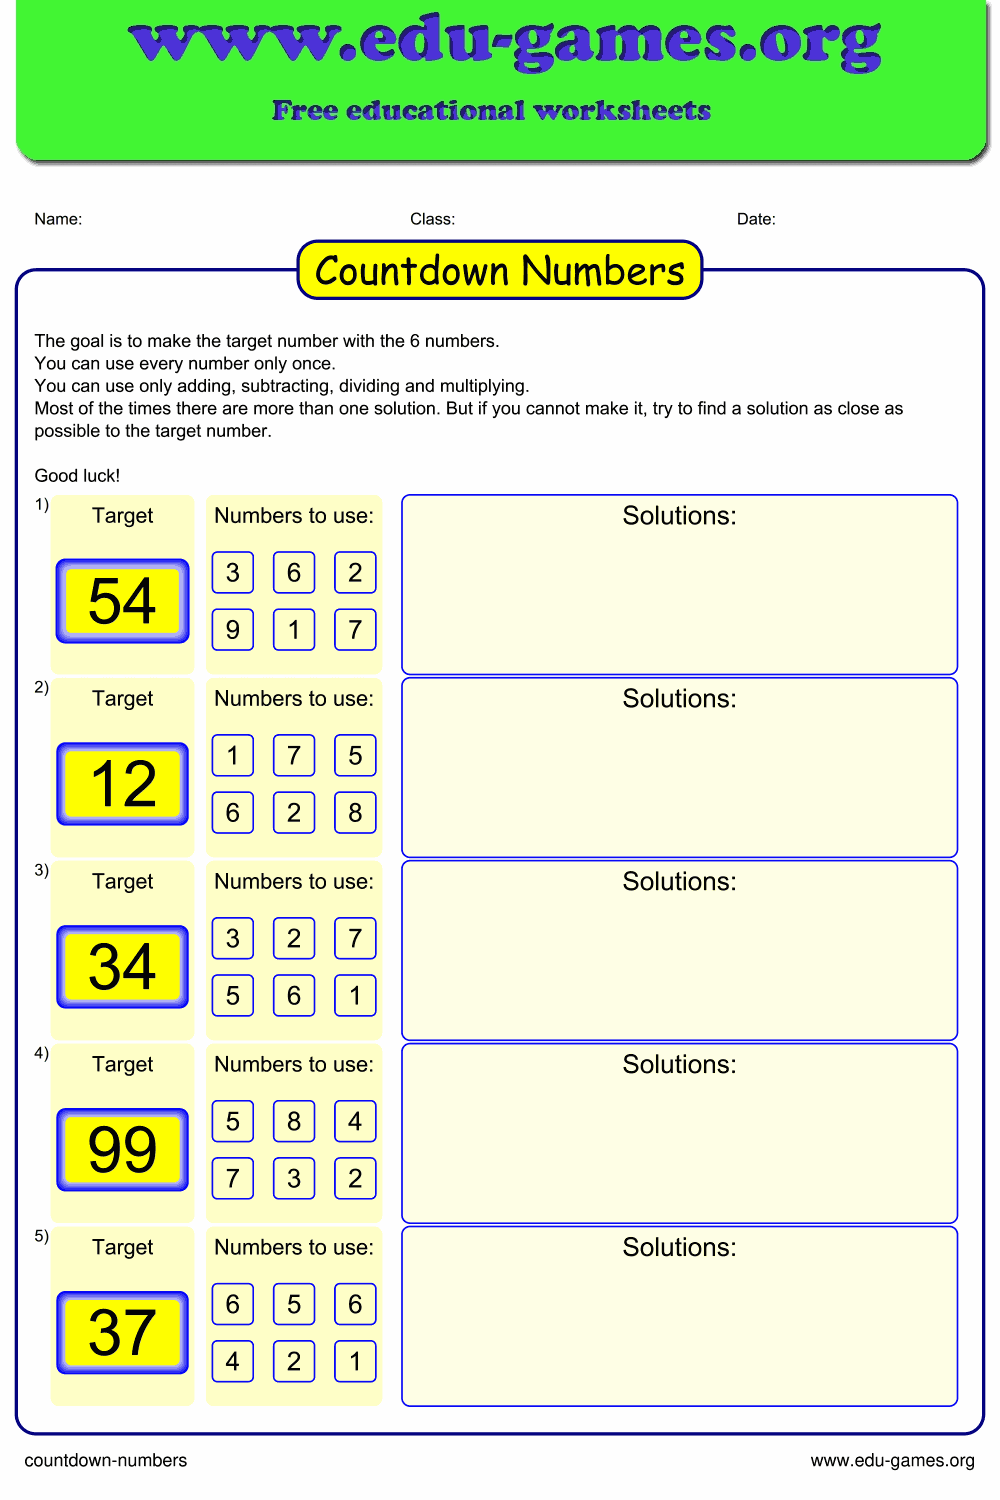 Countdown numbers worksheet | Free printable math game worksheets